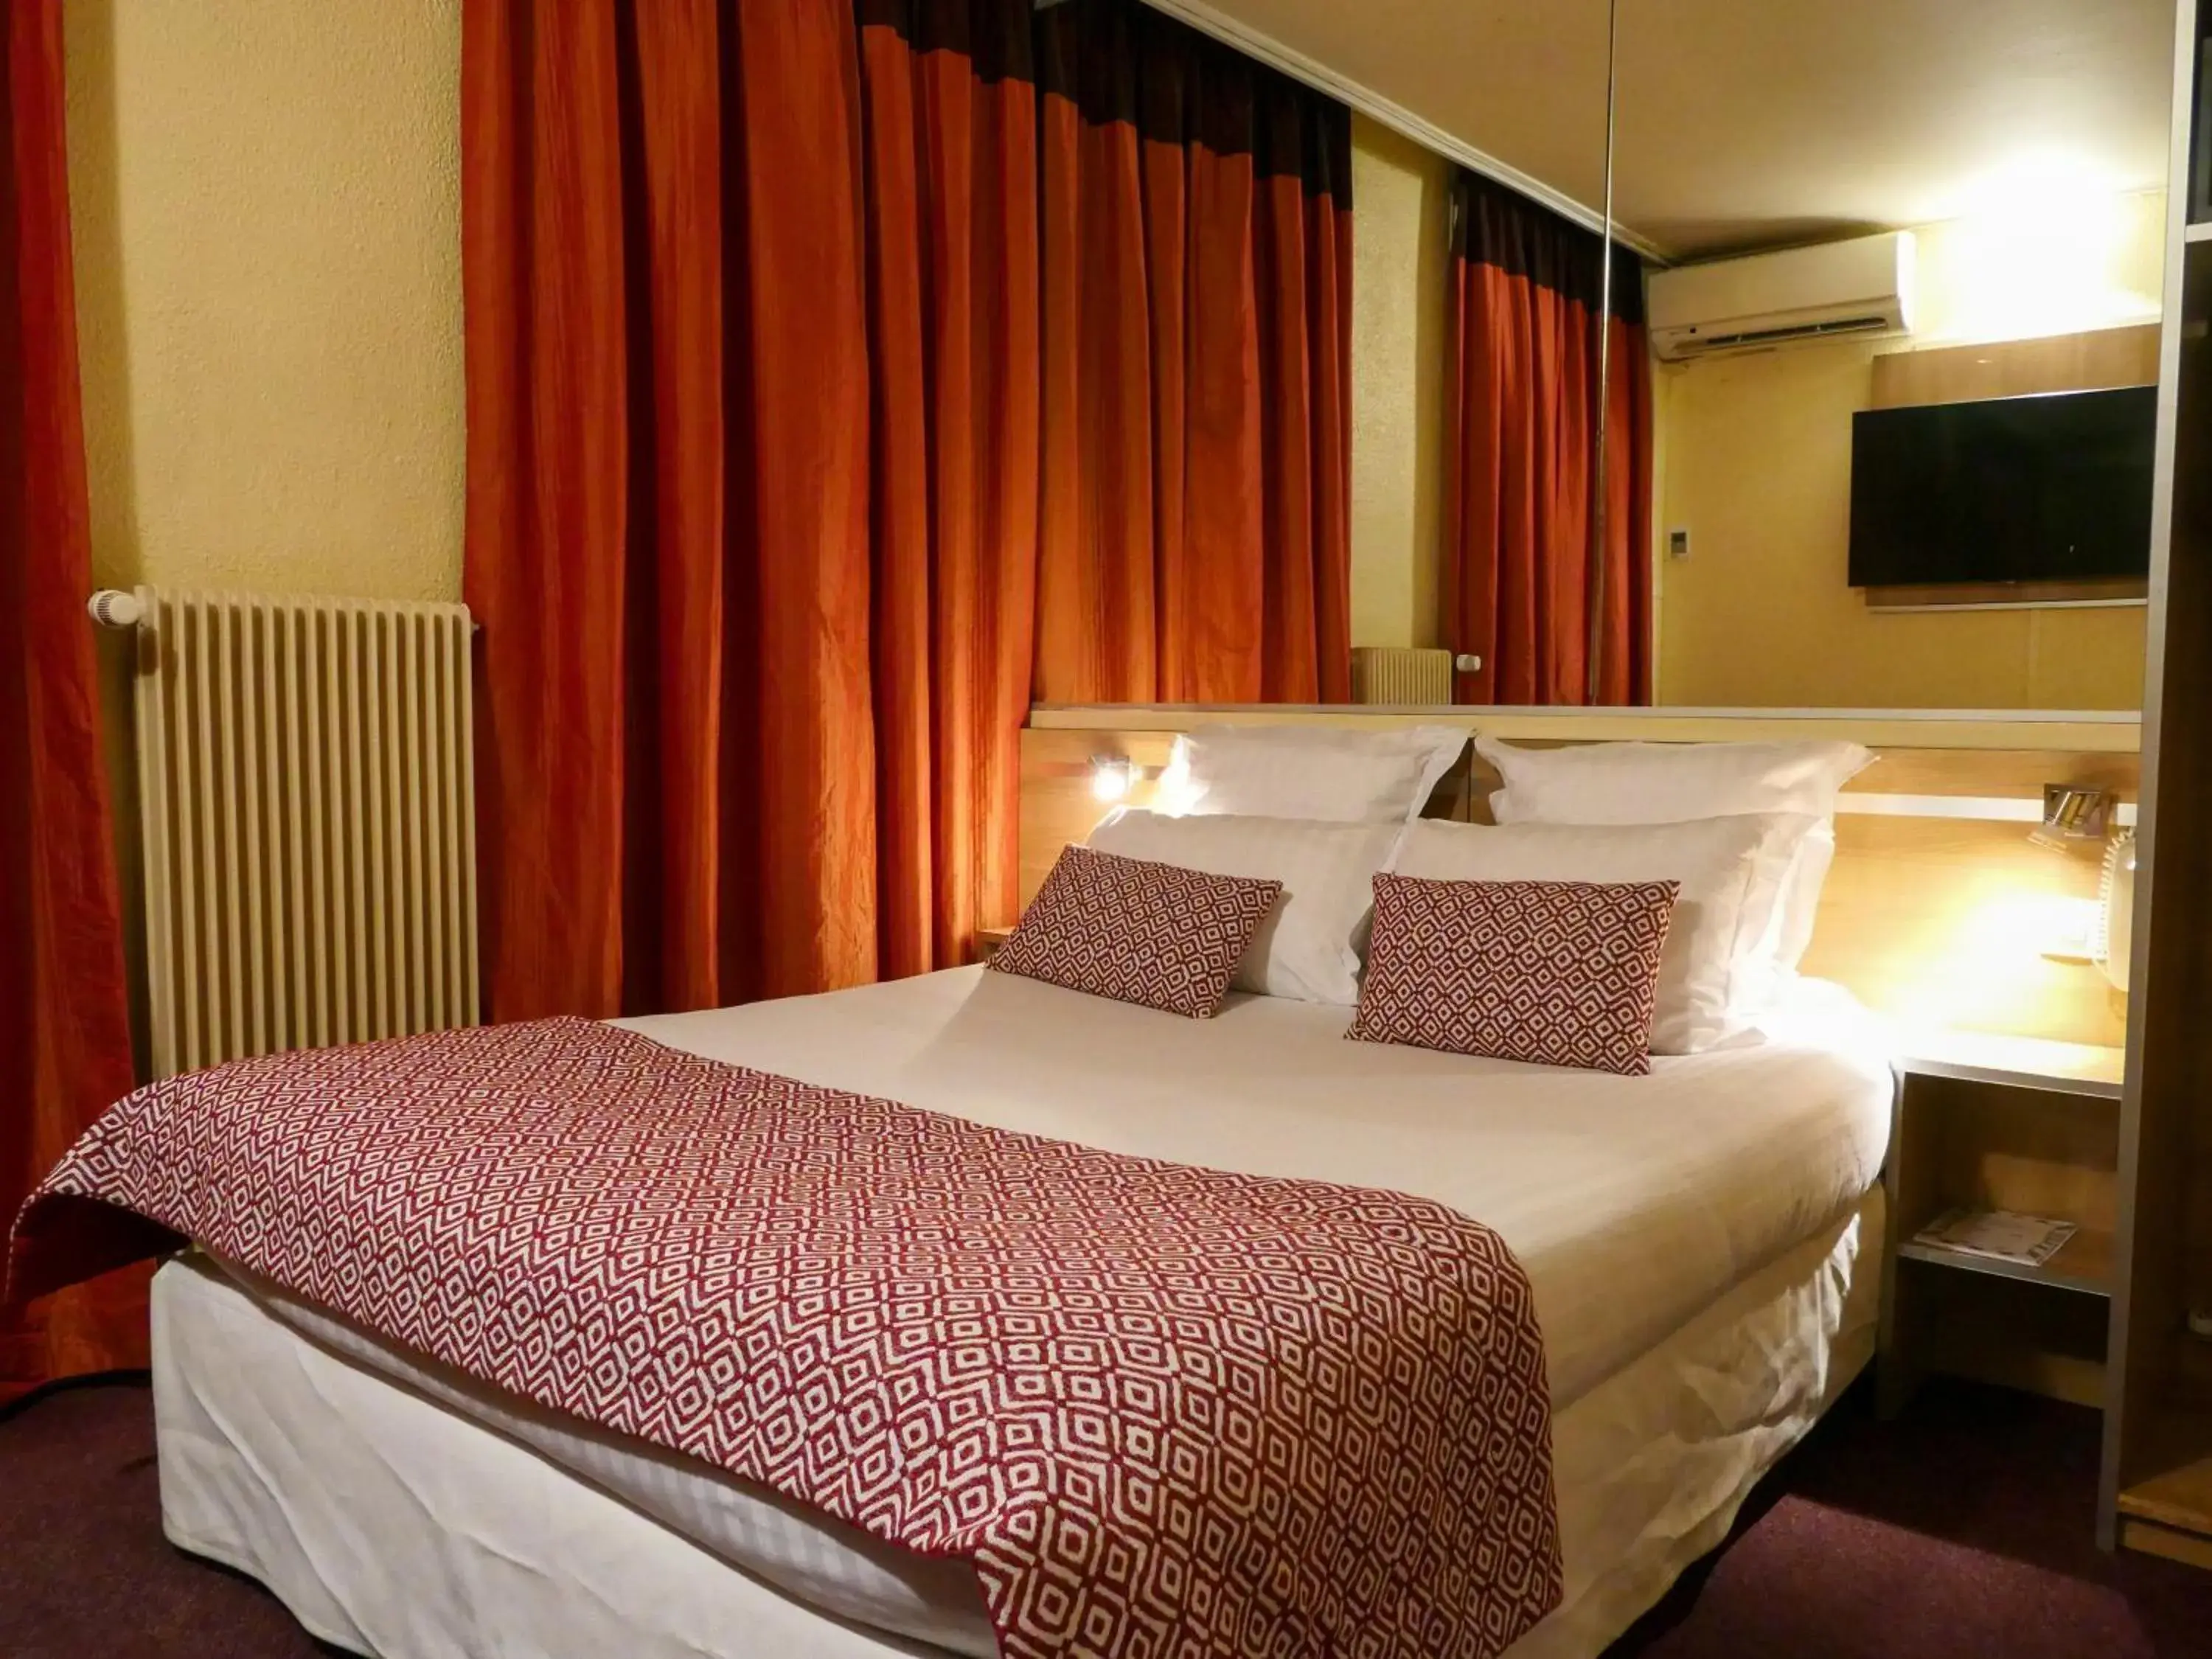 Night, Bed in Hôtel de France Quartier Latin